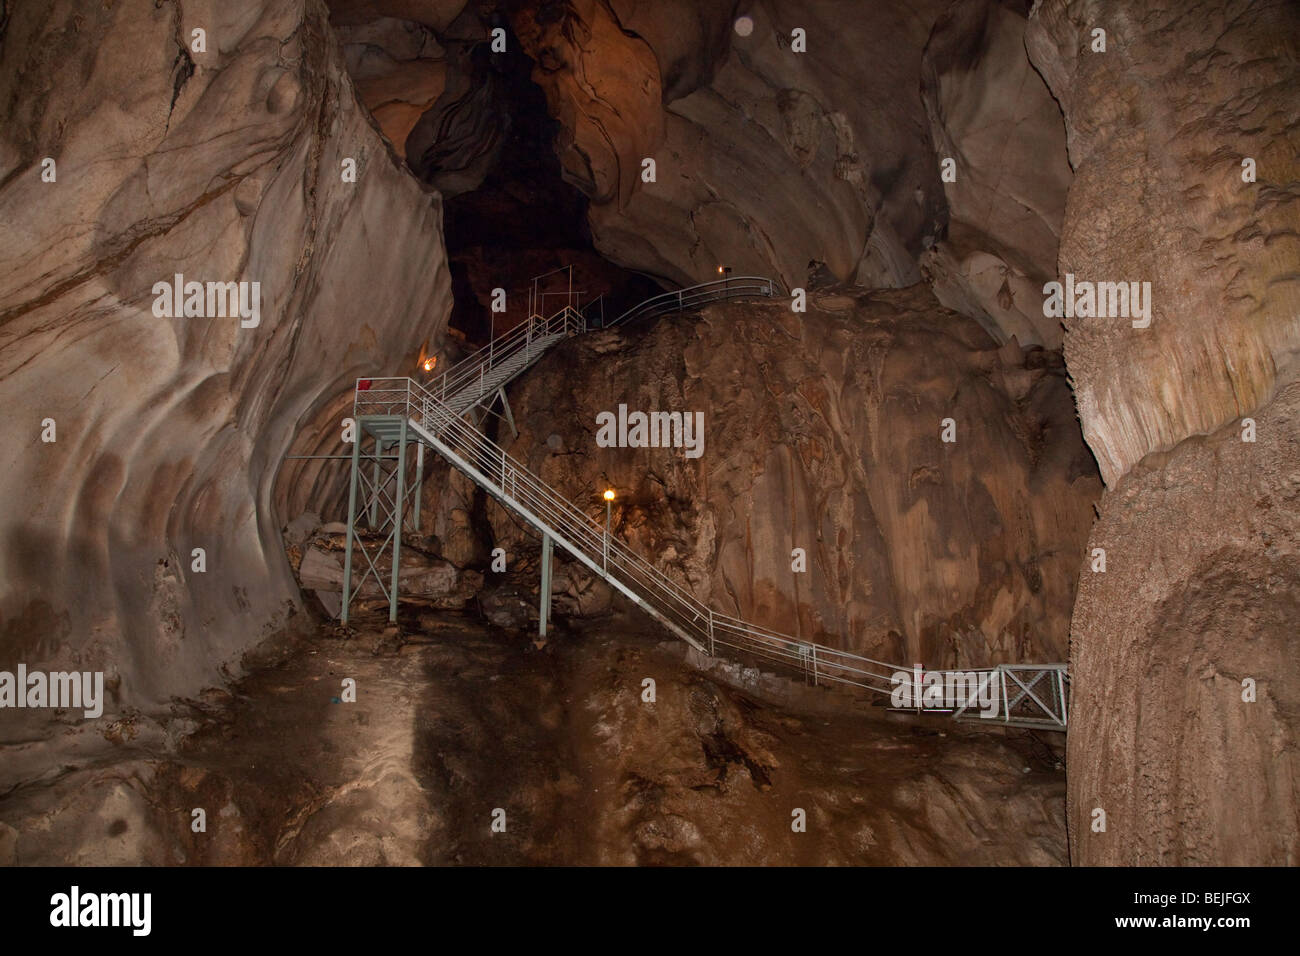 Gua Tempurung cave montrant l'intérieur de grandes allées et stalacmite. Banque D'Images